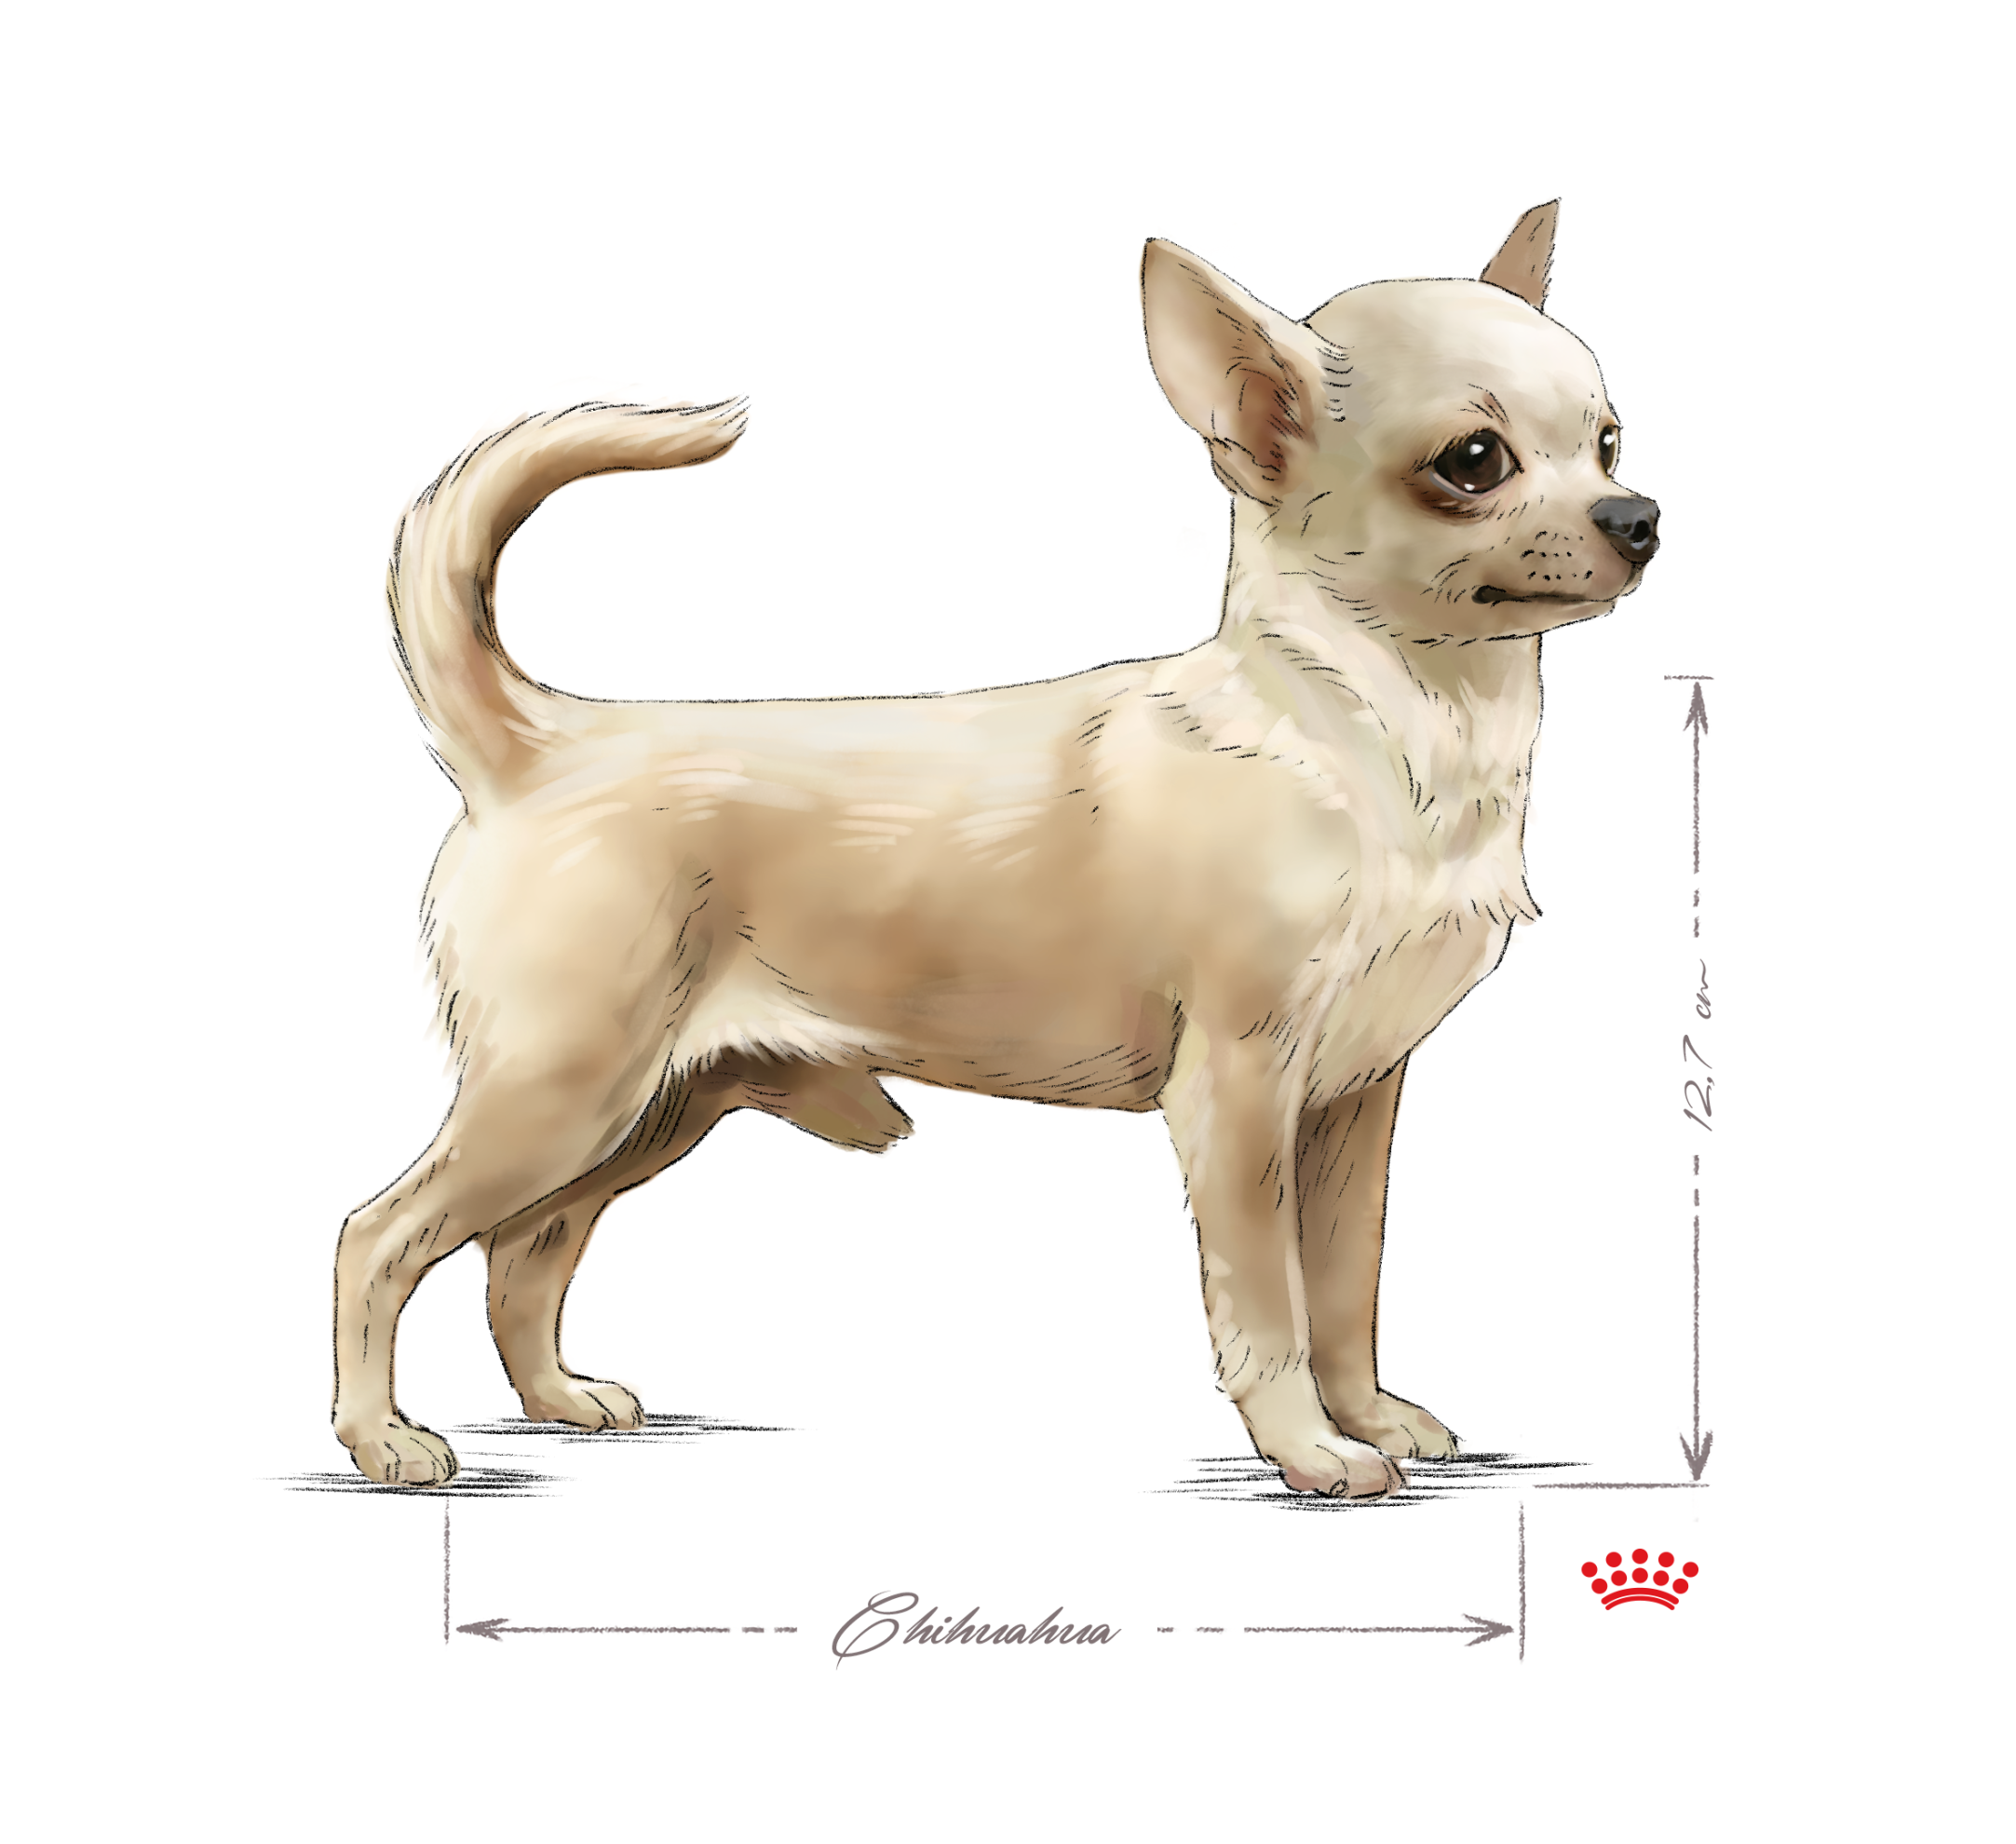 Chihuahua adulte en noir et blanc sur fond blanc